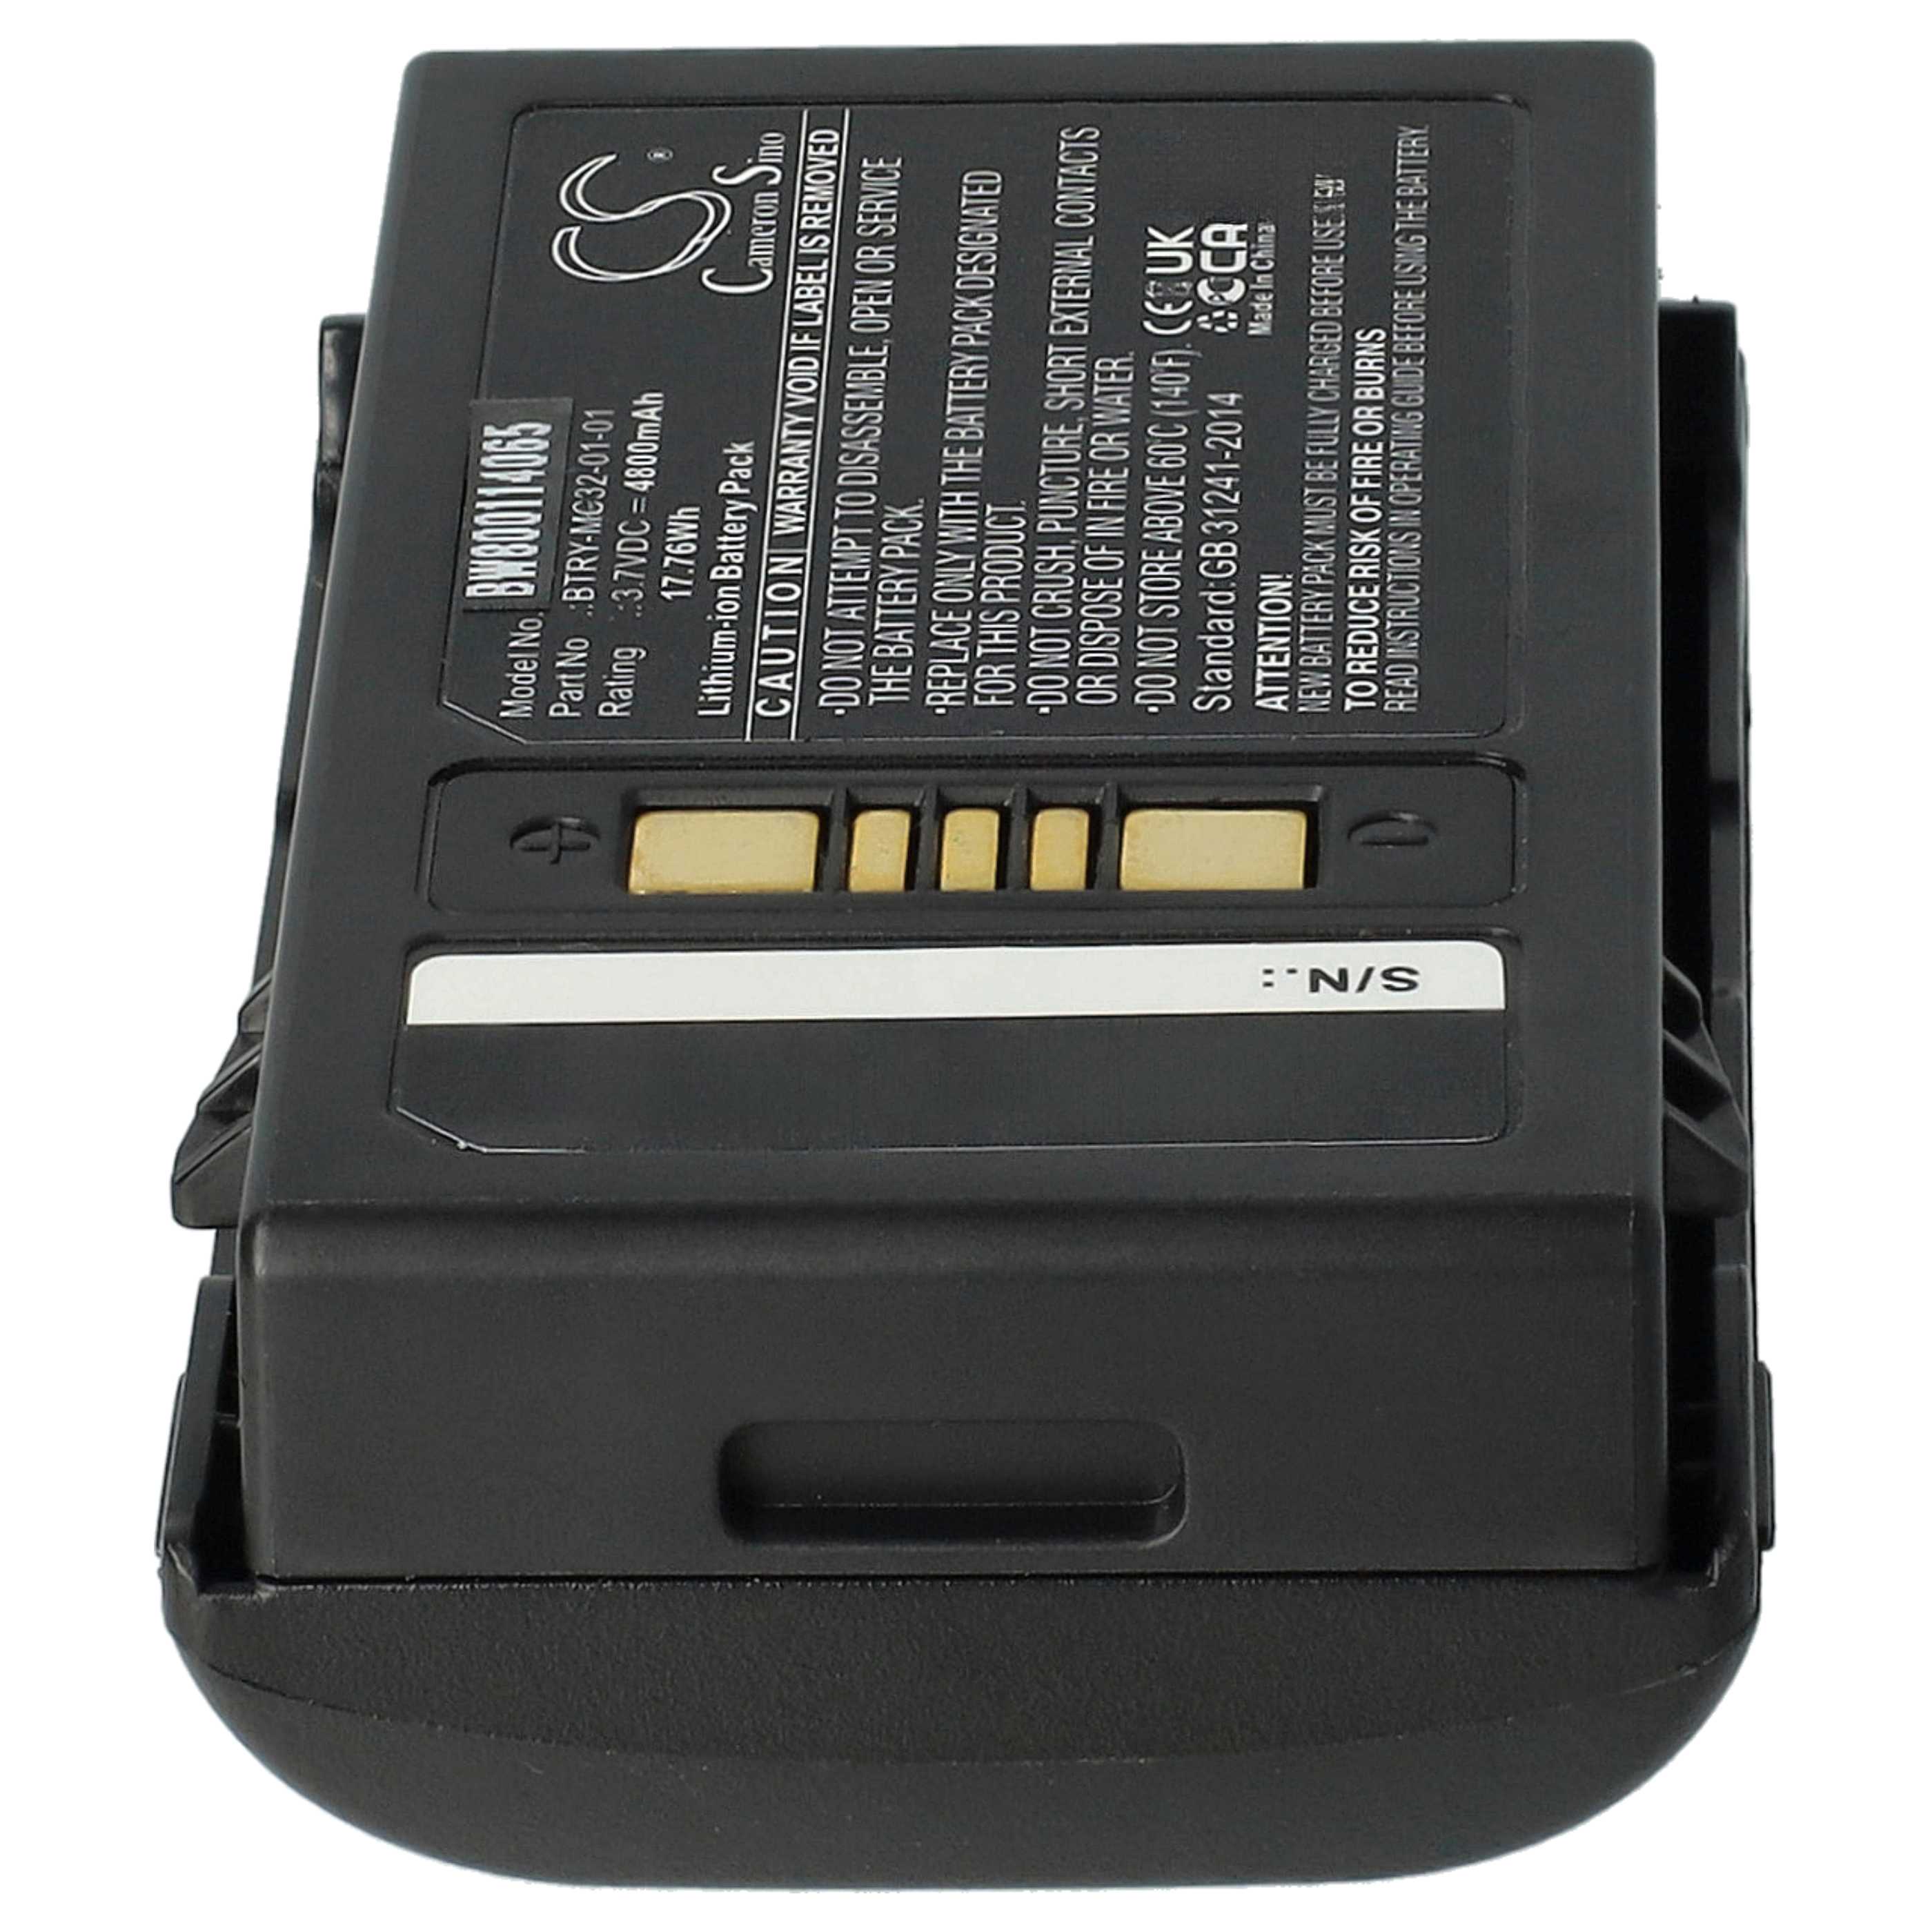 Batería reemplaza Motorola BTRY-MC32-01-01 para escáner de código de barras Motorola - 4800 mAh 3,7 V Li-Ion